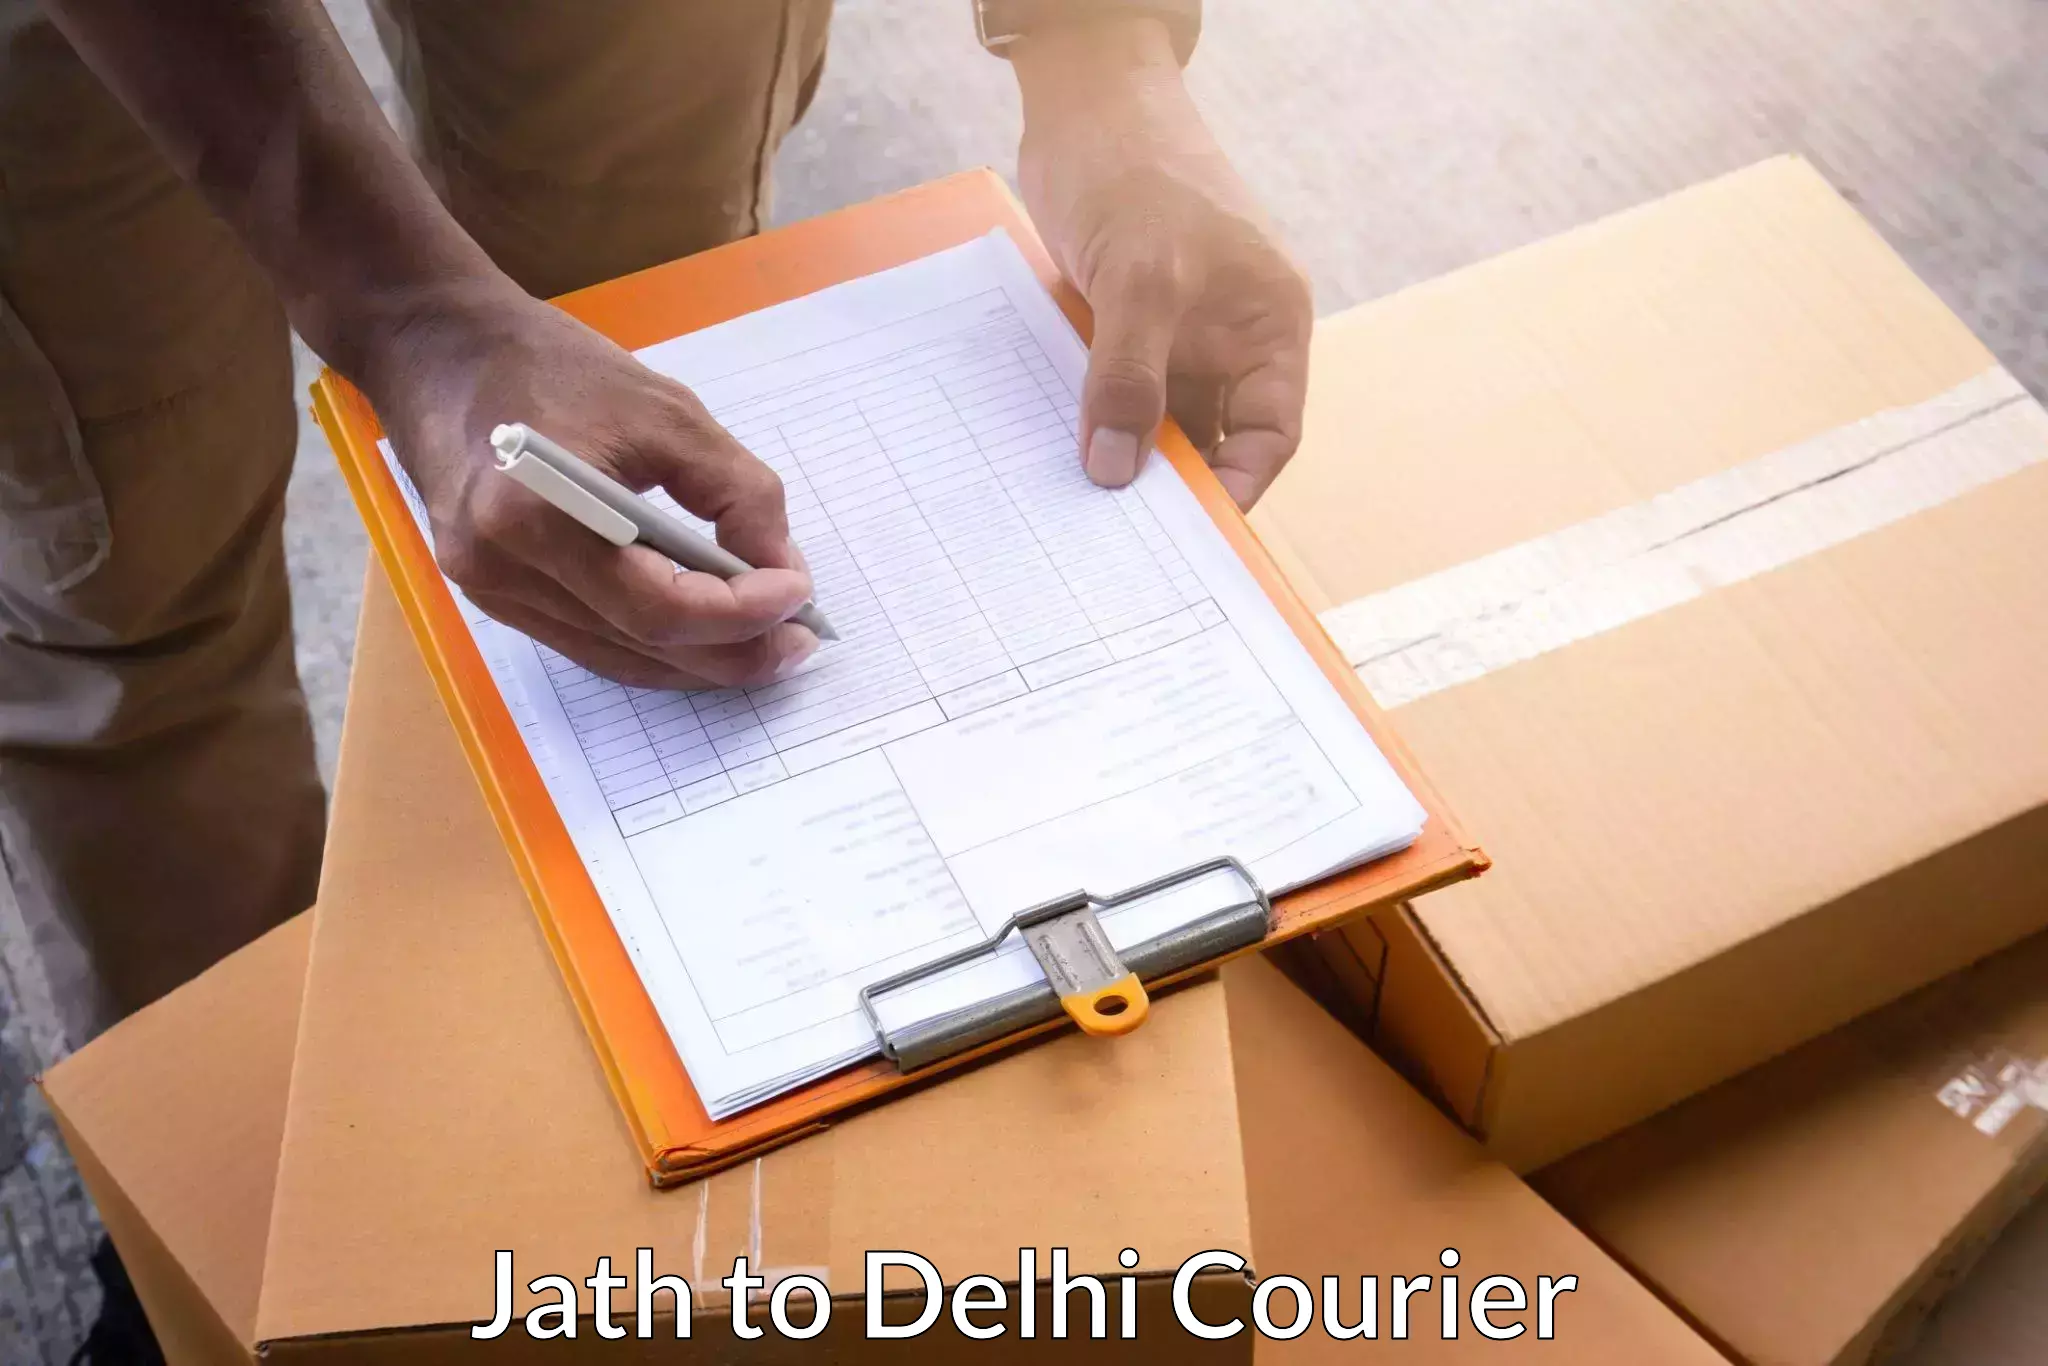 Courier service comparison Jath to Jamia Millia Islamia New Delhi